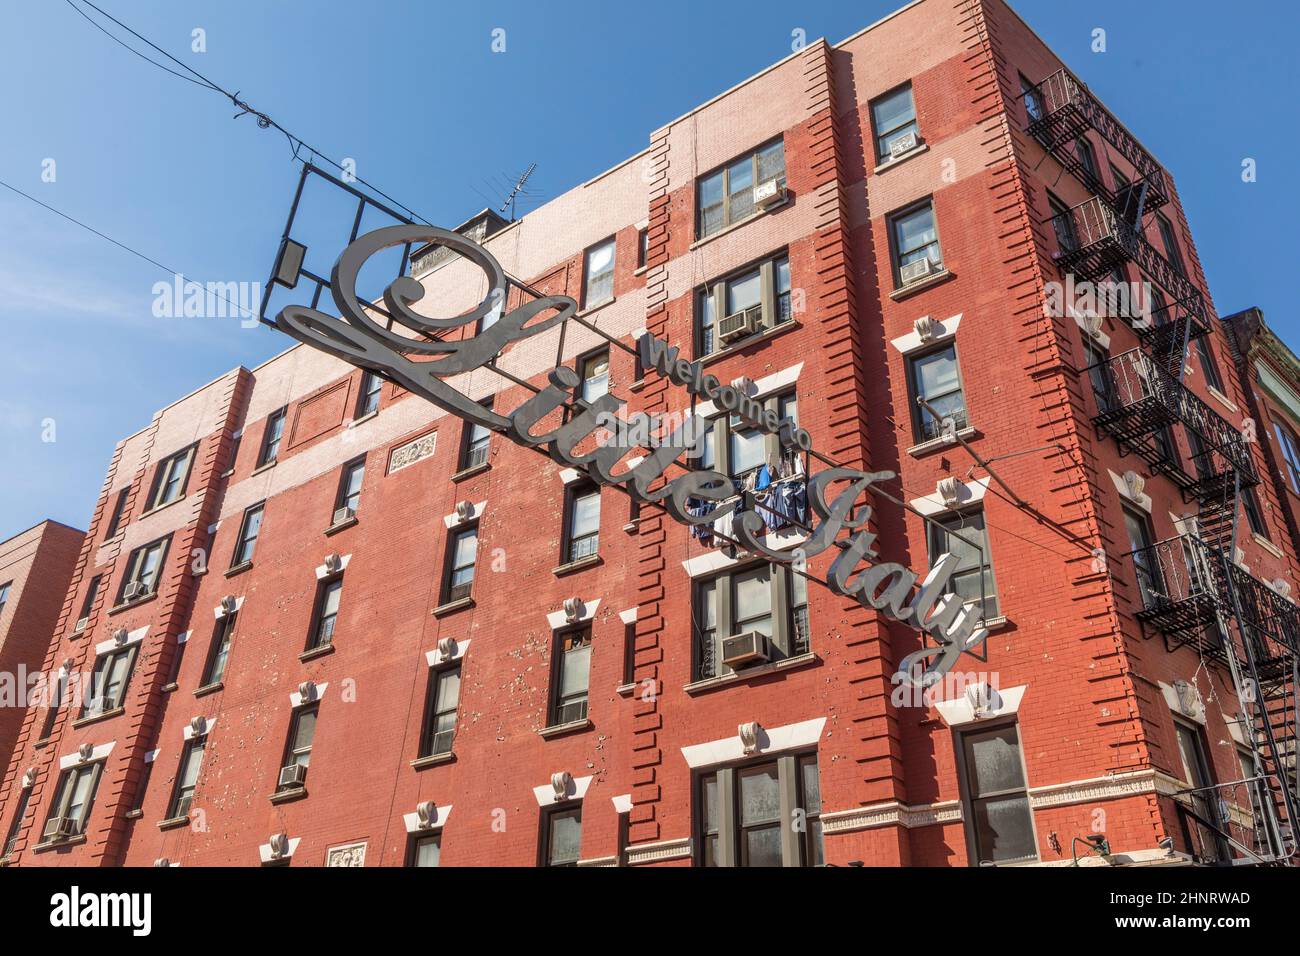 das schild Little italy markiert den Eingang des Teils von Manhattan, in dem viele italienische Migranten ihre Heimat gefunden haben Stockfoto